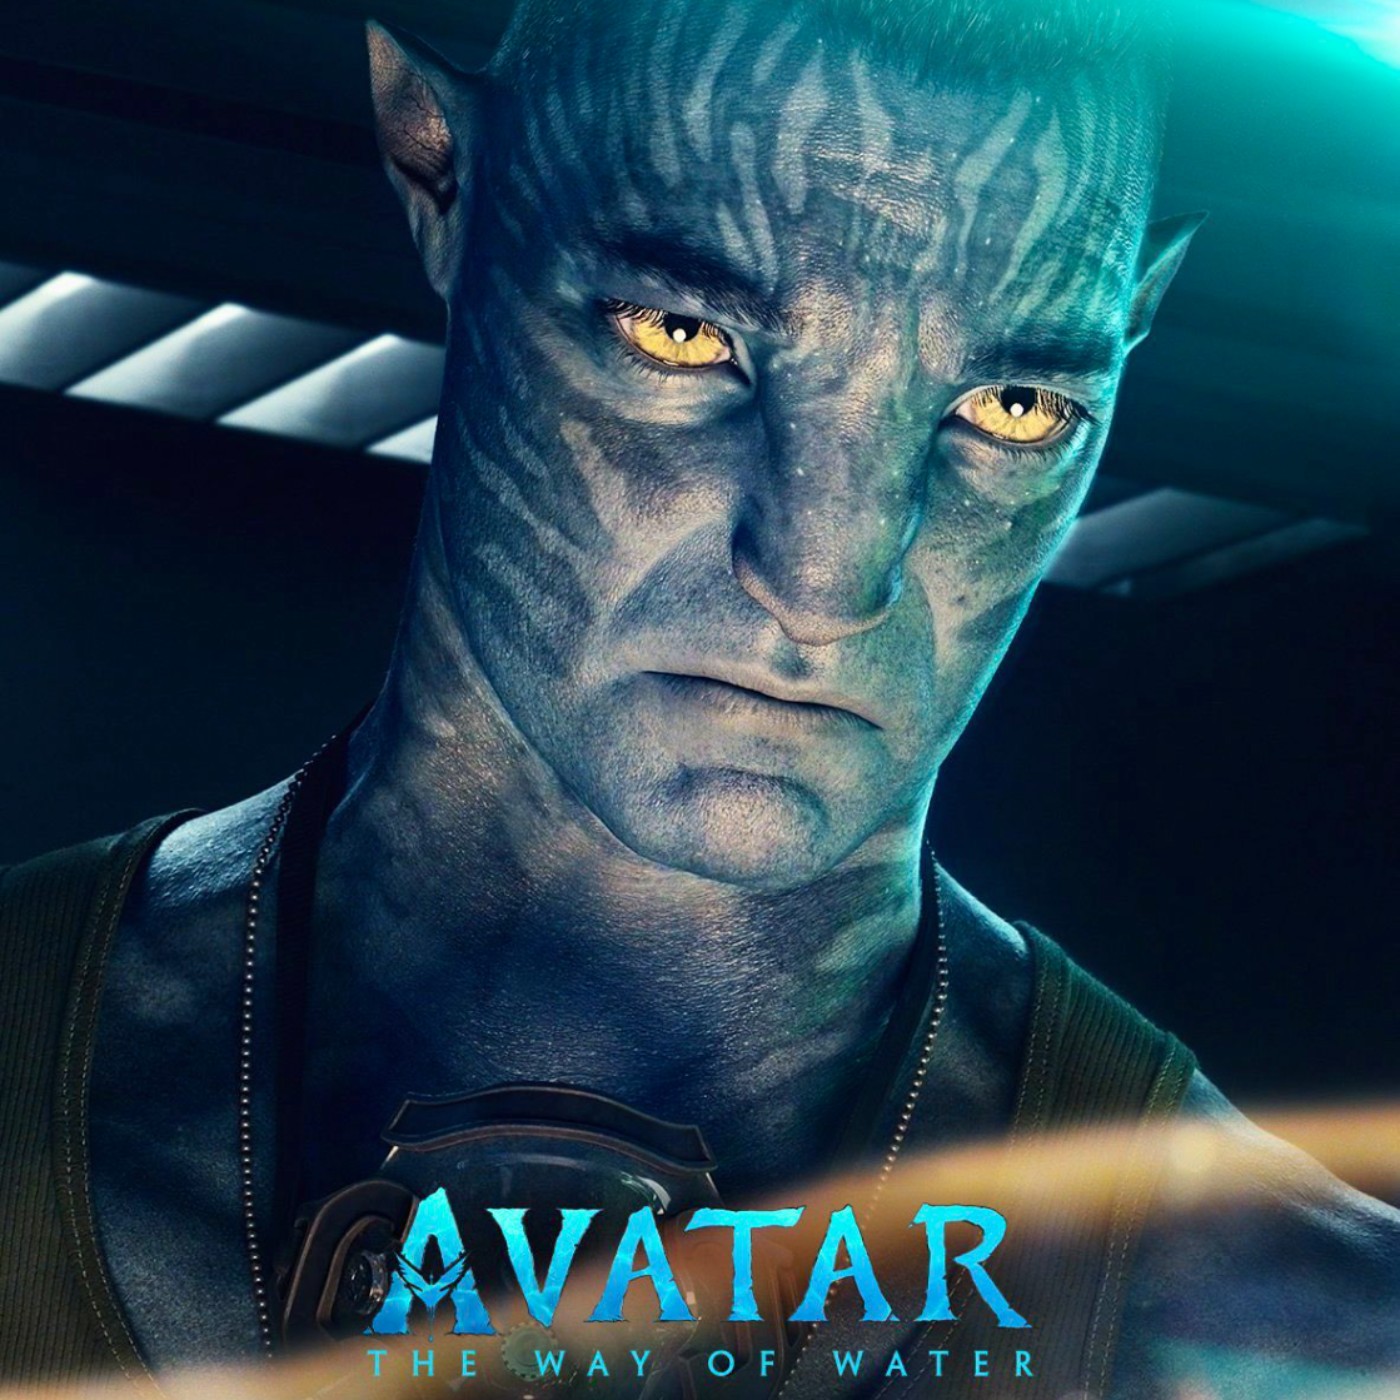 VER!] Avatar 2 Online Pelicula completa en Espanol y Latino ...